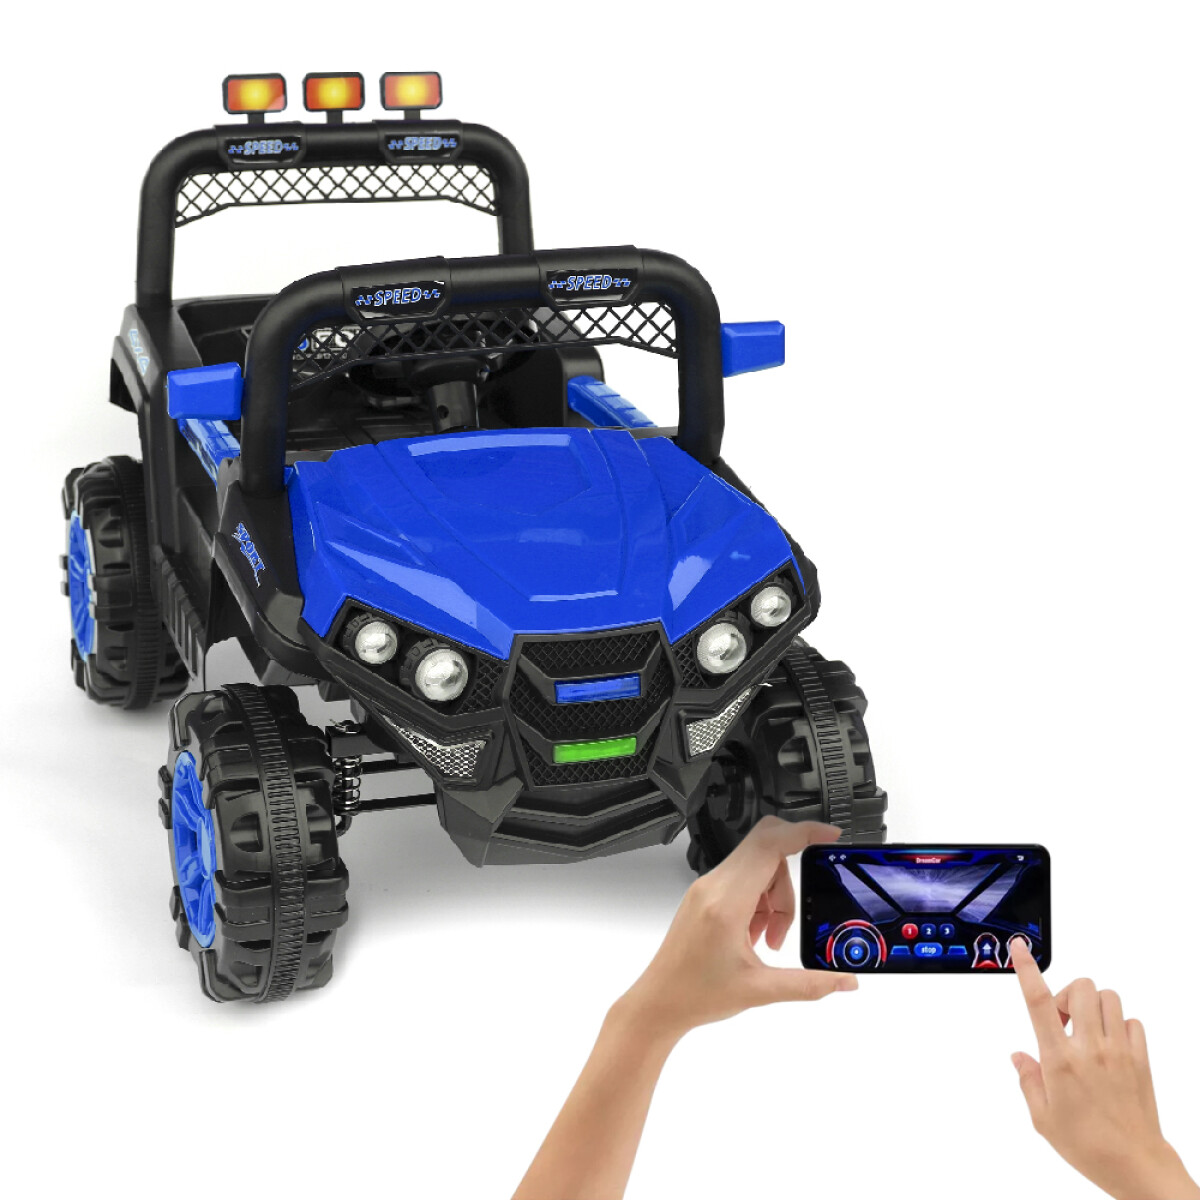 Jeep 4x4 Niños Auto Motor Batería Control Luces USB y Música - Azul 